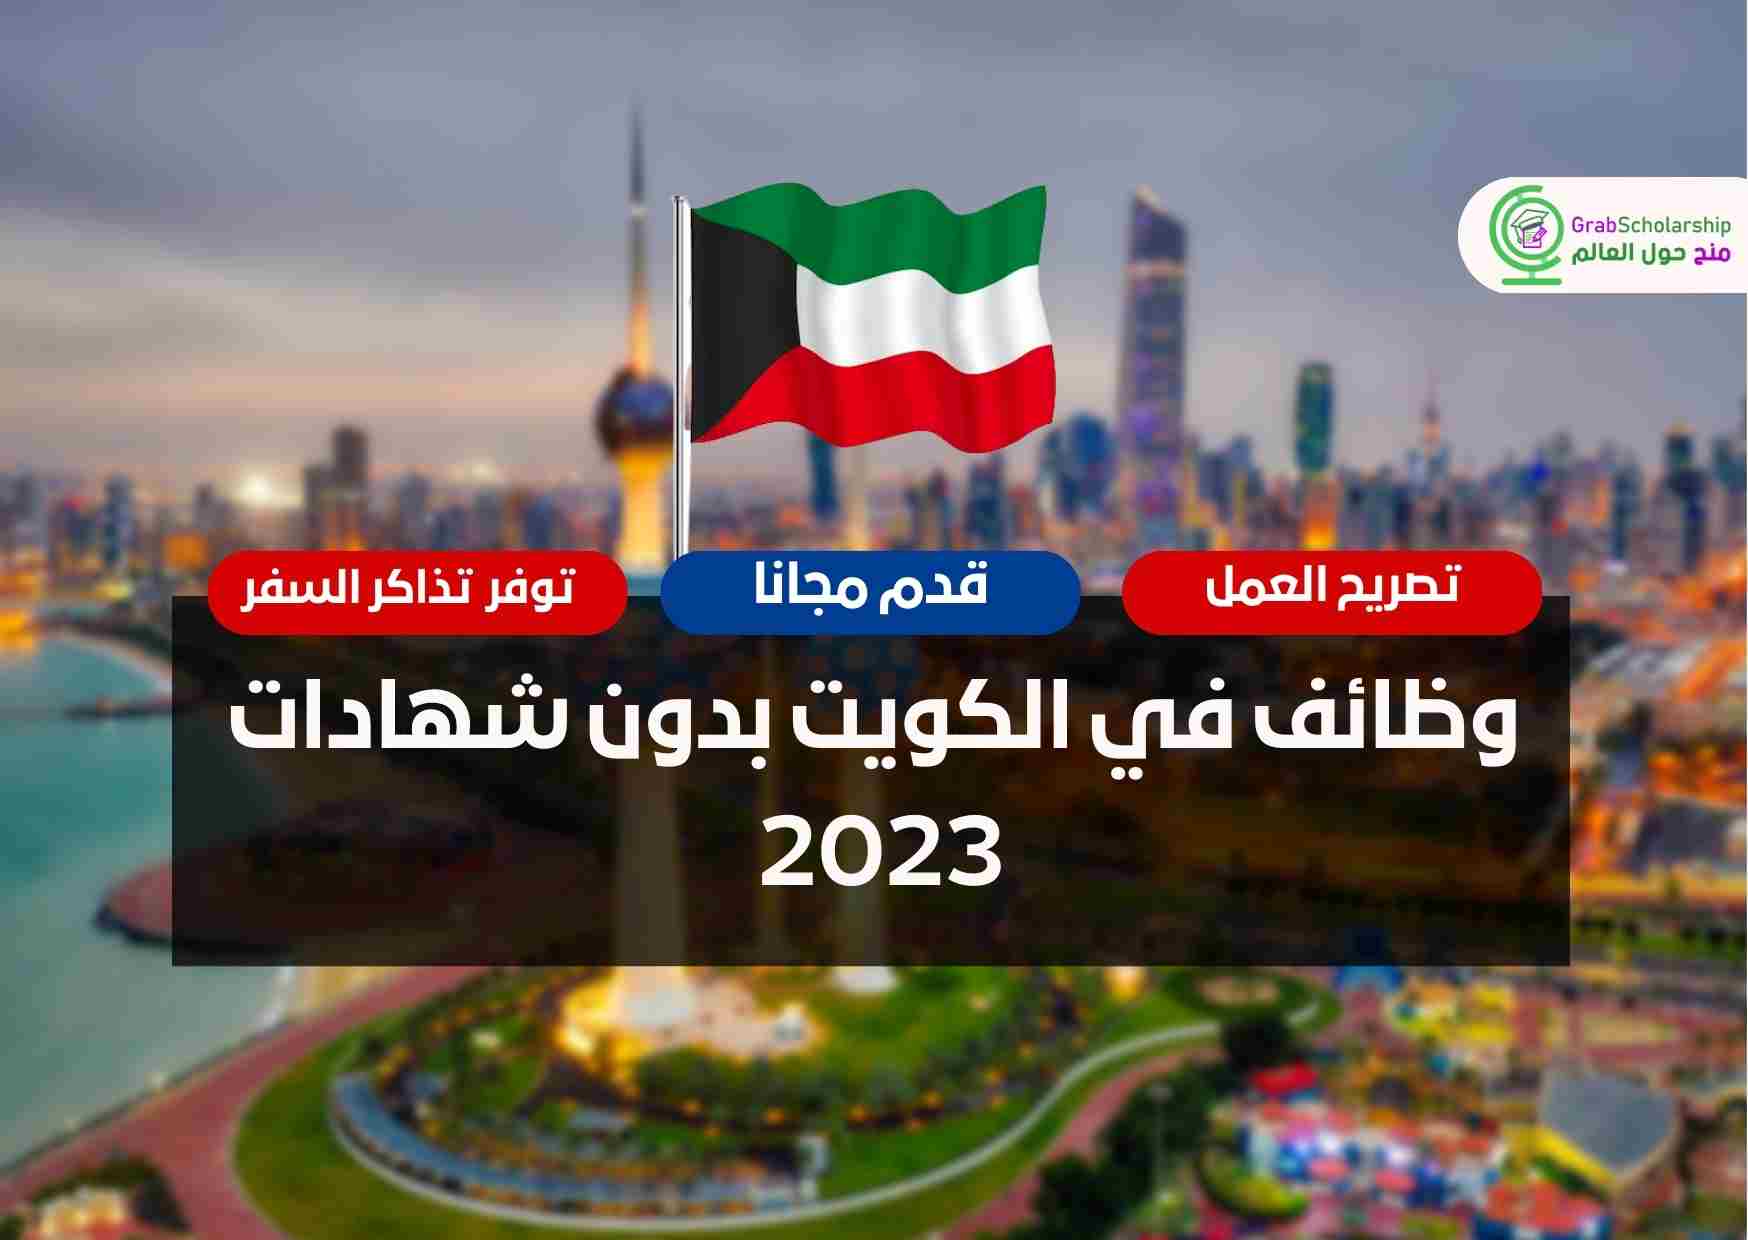 وظائف في الكويت بدون شهادات 2023